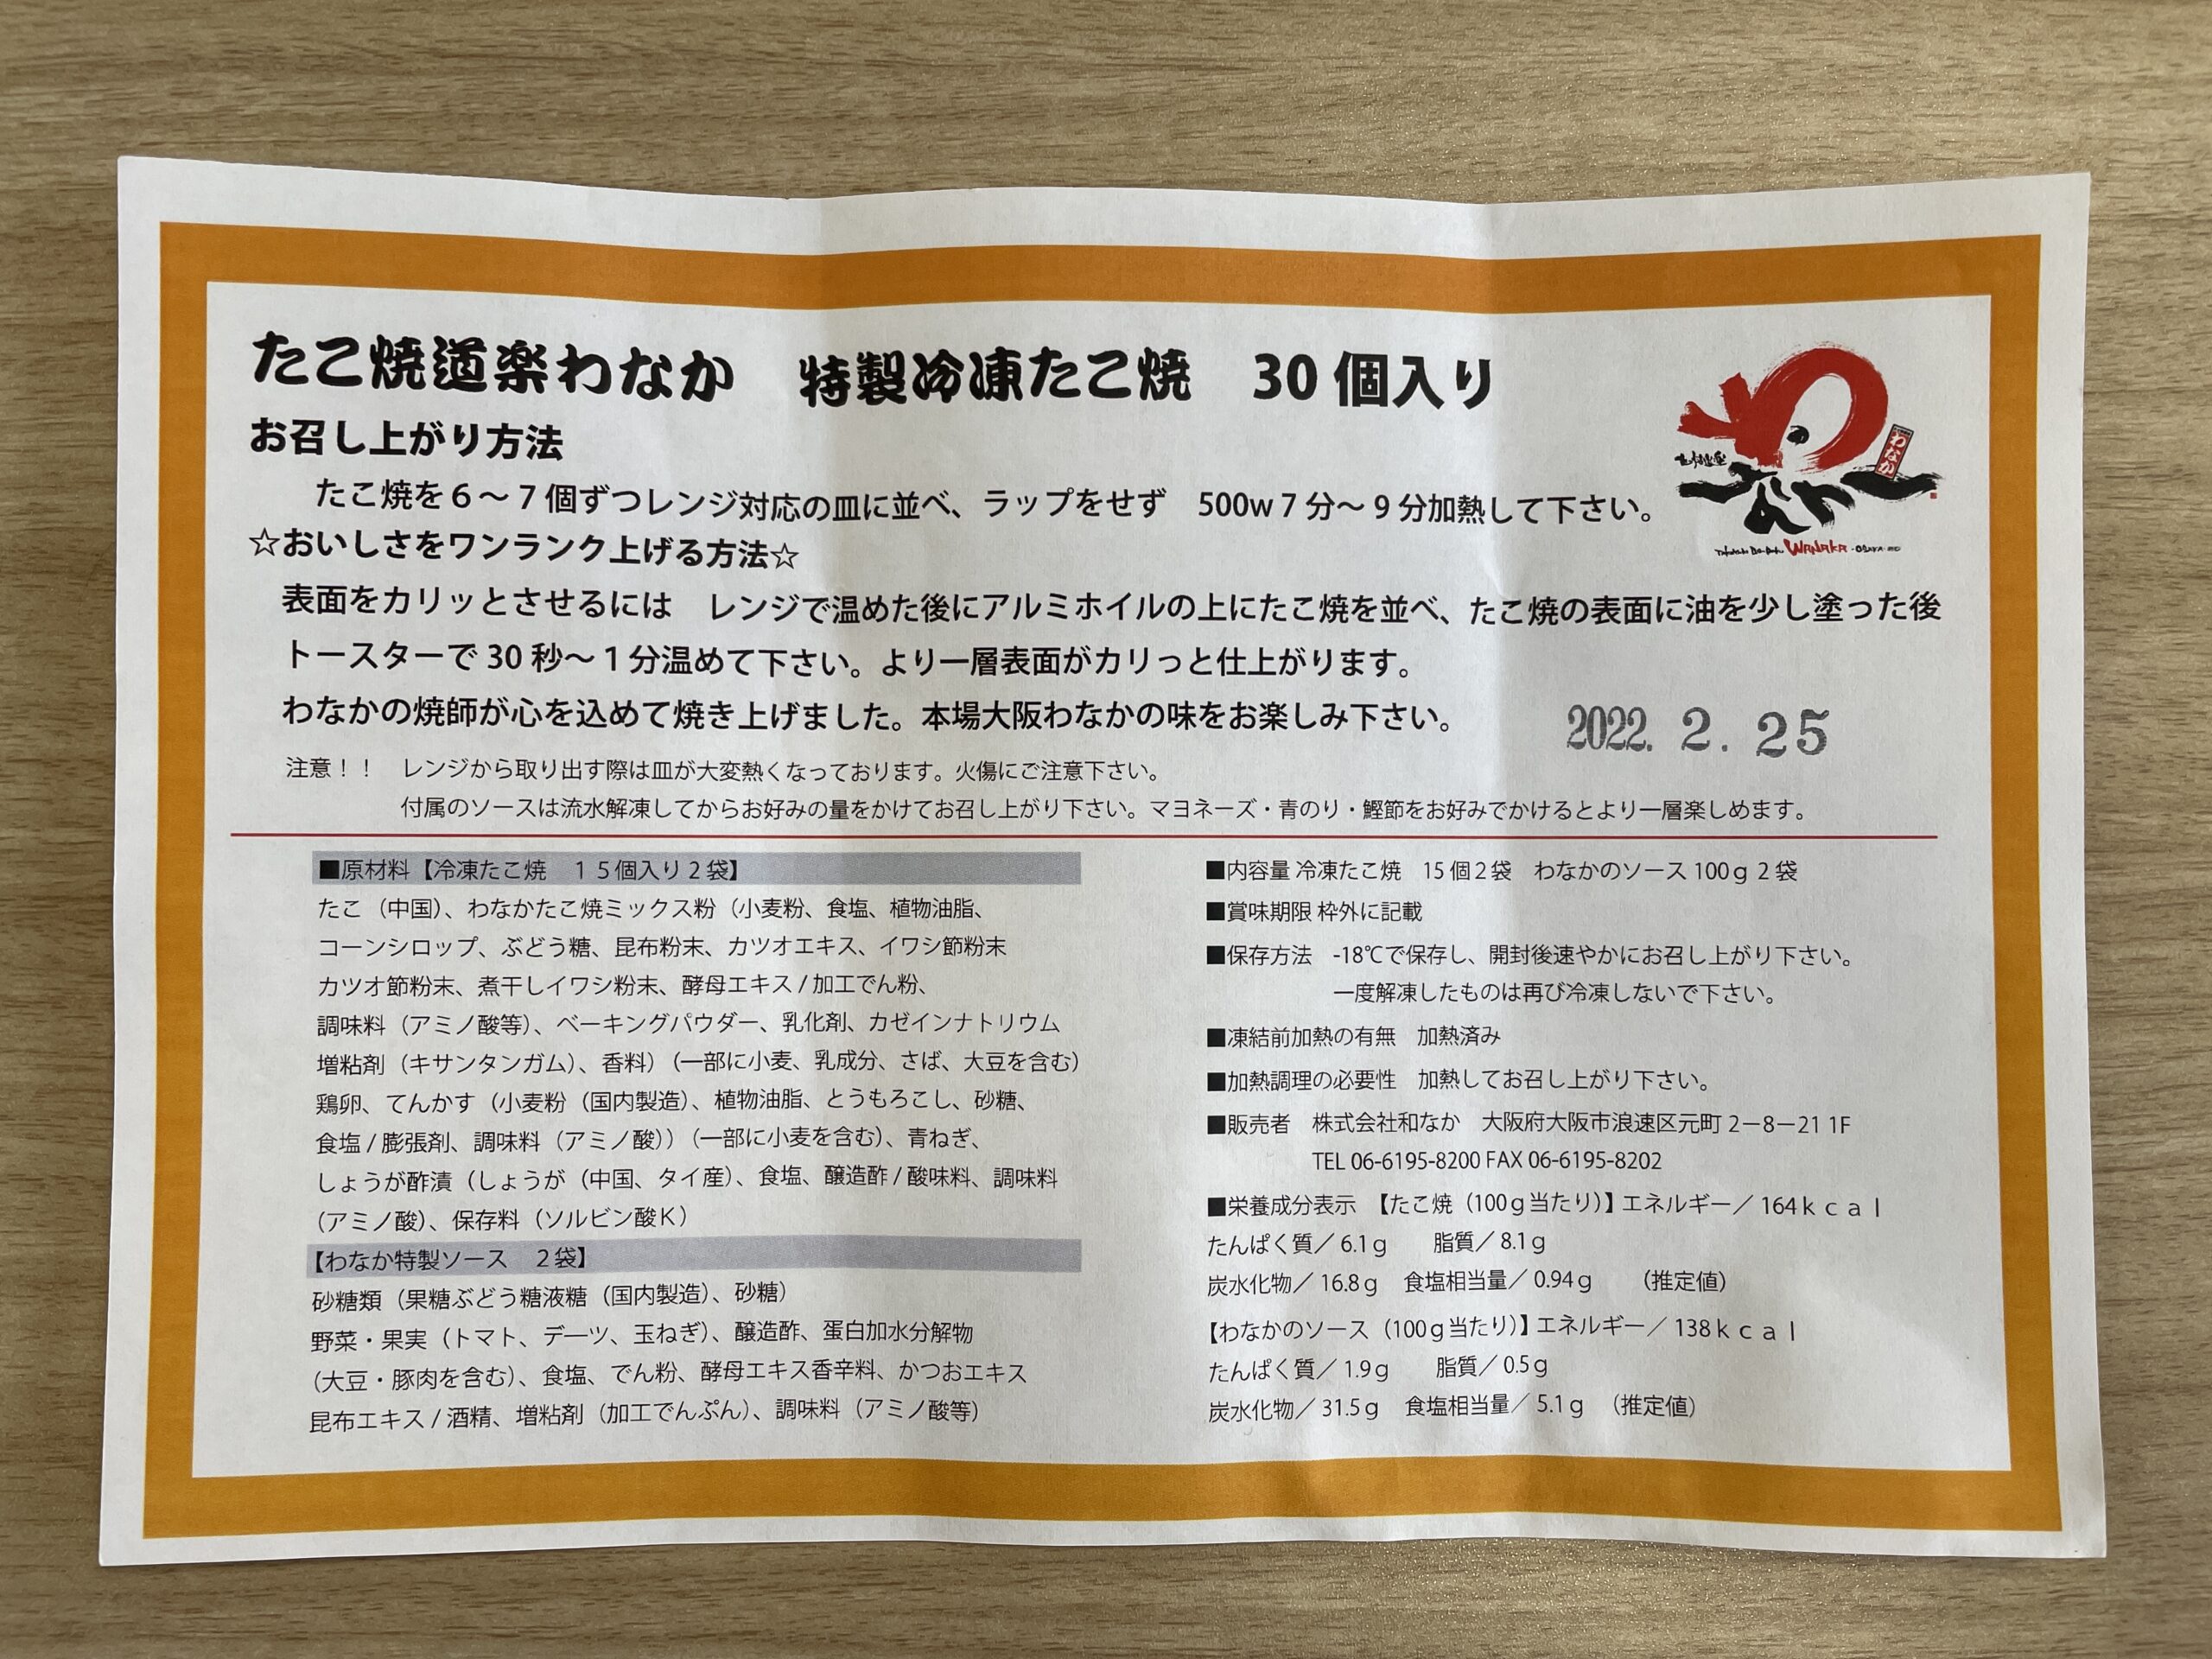 大阪「わなか」の冷凍たこ焼きを通販でお取り寄せした際に入っていた取扱説明書の写真